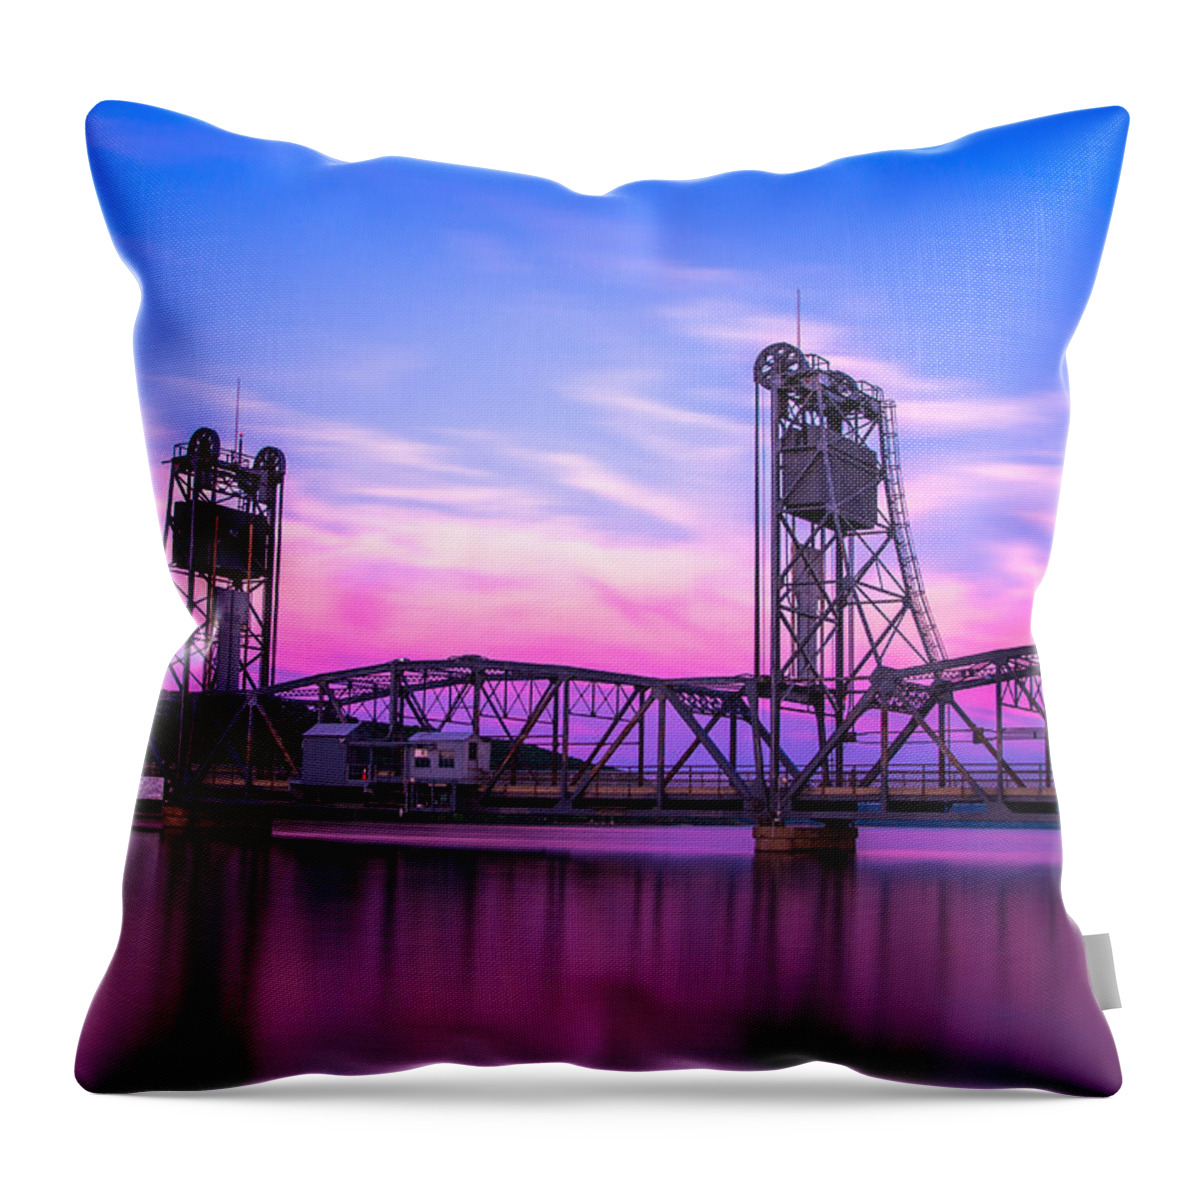 Landscape Throw Pillow featuring the photograph Stillwater Lift Bridge by Adam Mateo Fierro